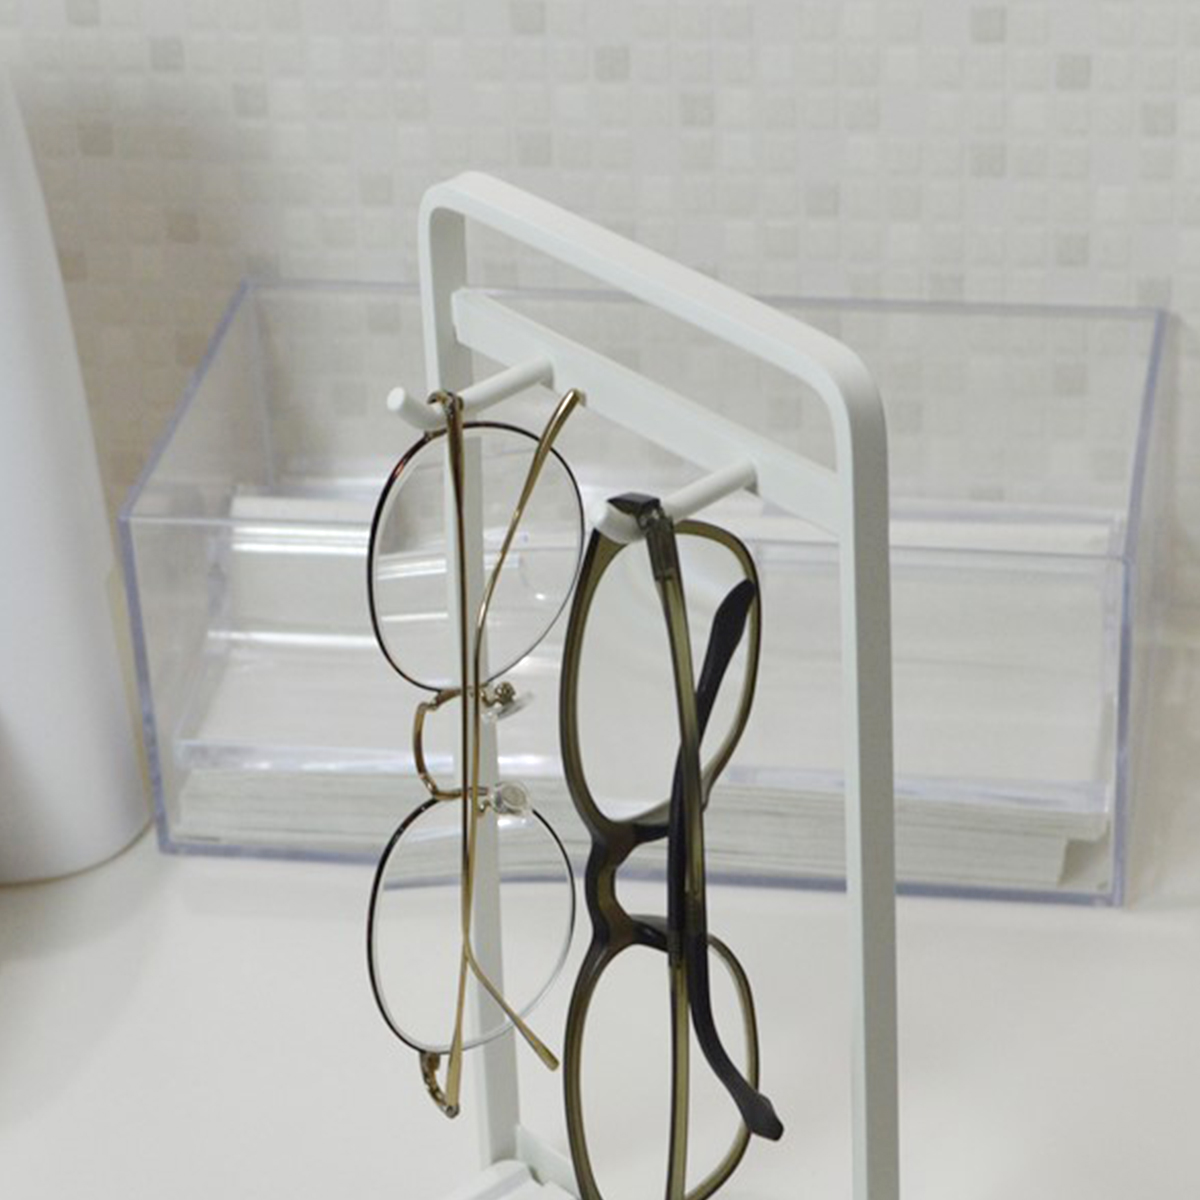 眼鏡スタンド 2本 おしゃれ シンプル 眼鏡 収納 コップ 置き 珪藻土 スチール COLLEND